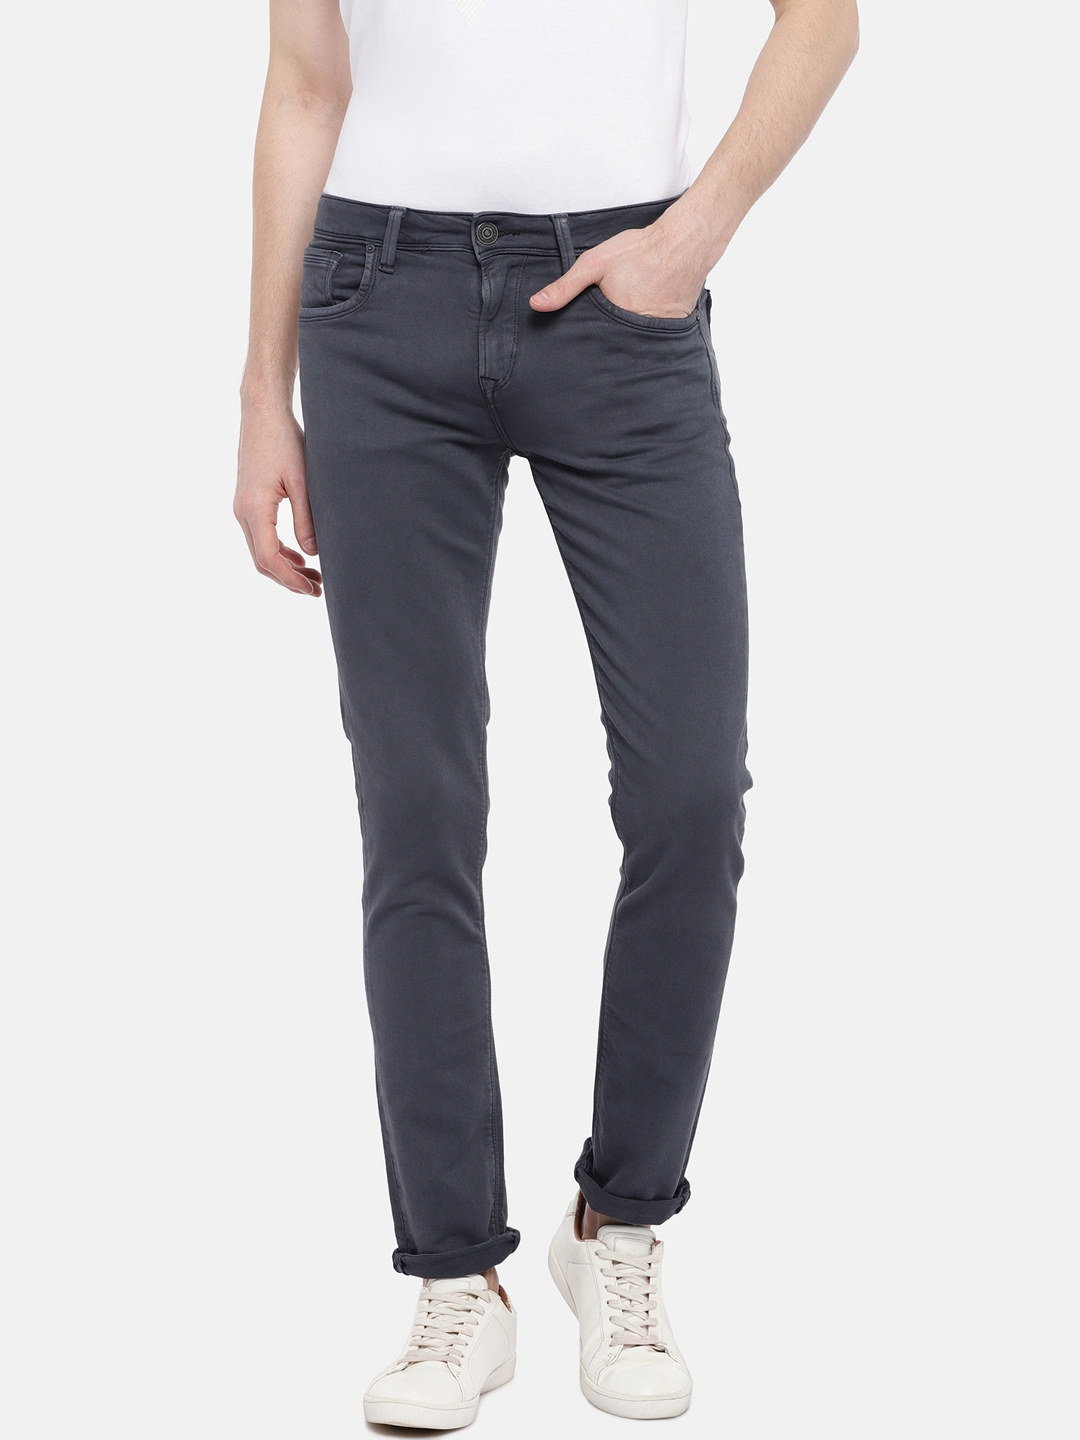 Buy Easies Men Grey Slim Fit Mid Rise Stretchable Clean Look Jeans ...